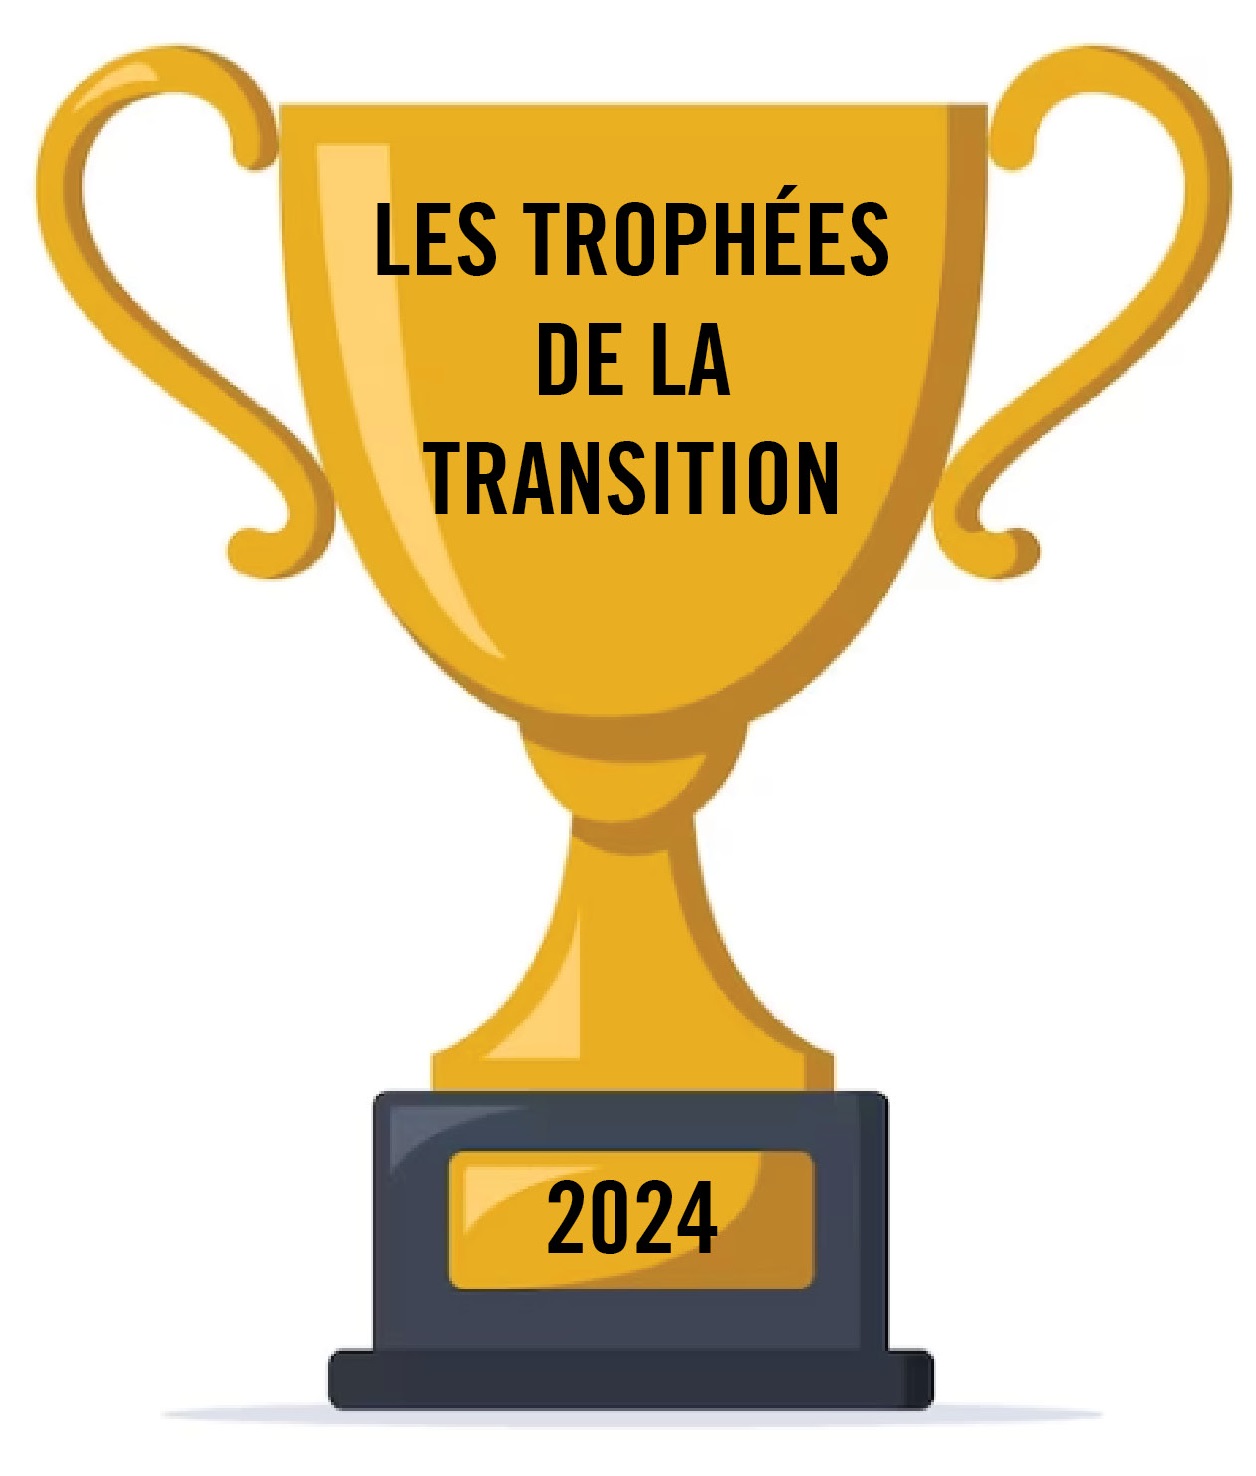 Les trophées de la transition